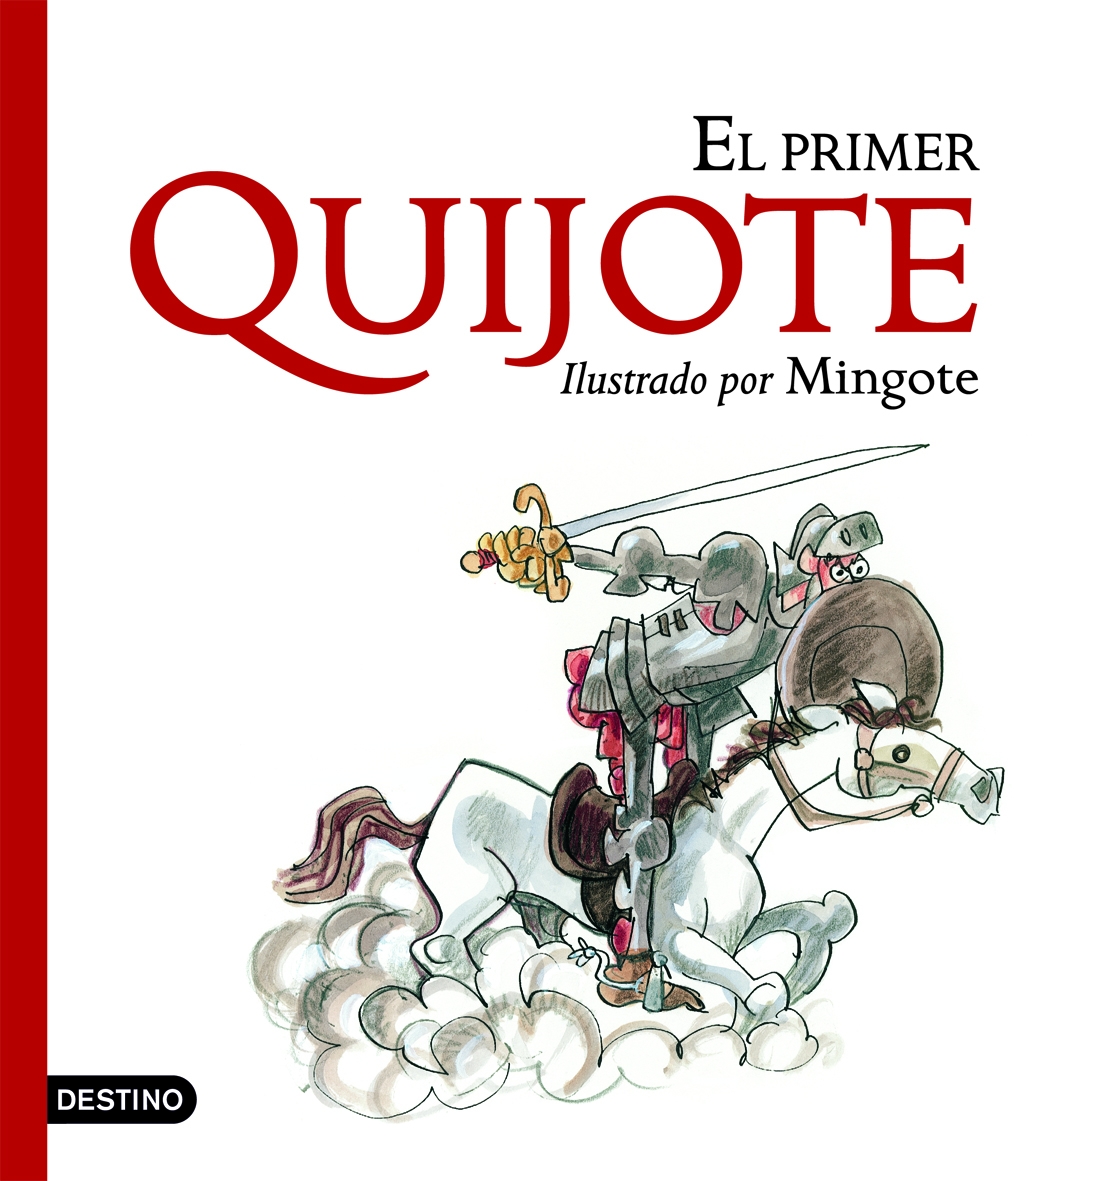 El primer Quijote